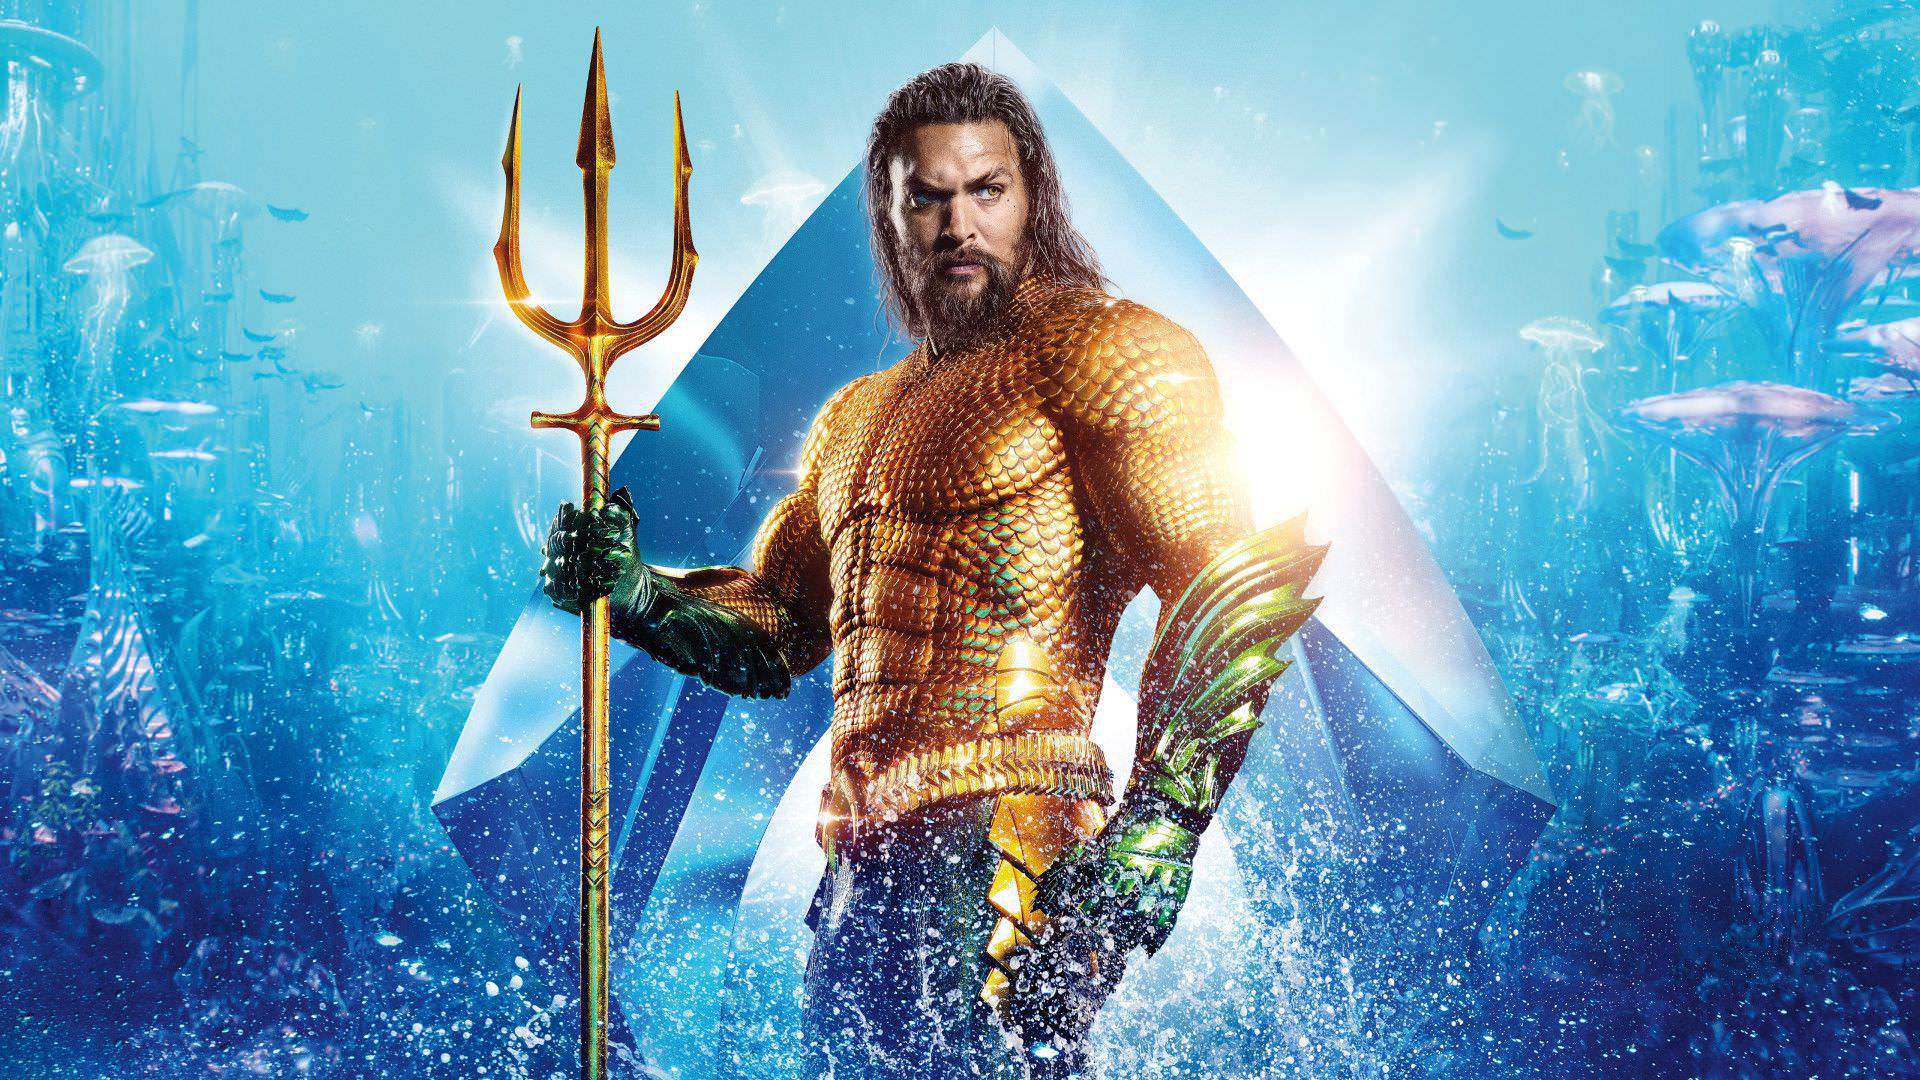 جیسون موموآ در نقش آکوامن در پوستر فیلم Aquaman 